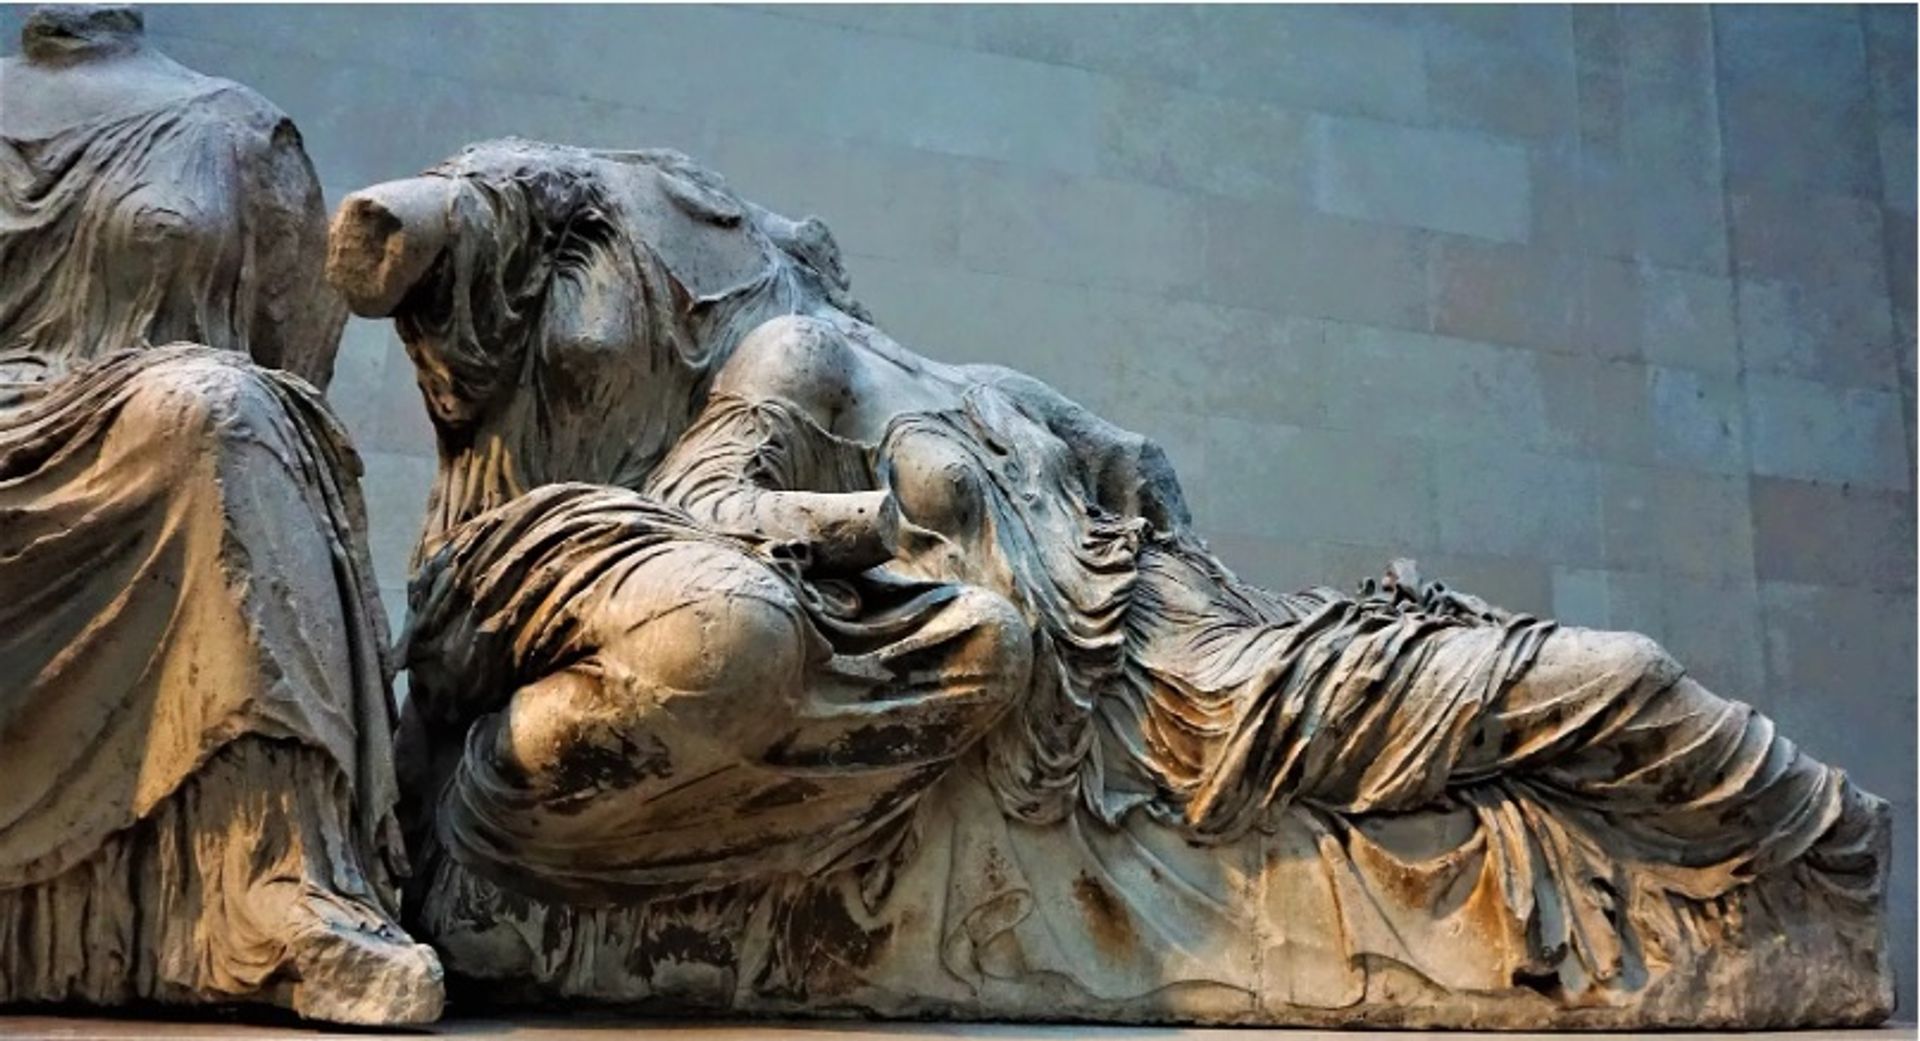 פסלי הפרתנון בגלריה דוווין במוזיאון הבריטי בלונדון

צילום: Joyofmuseums